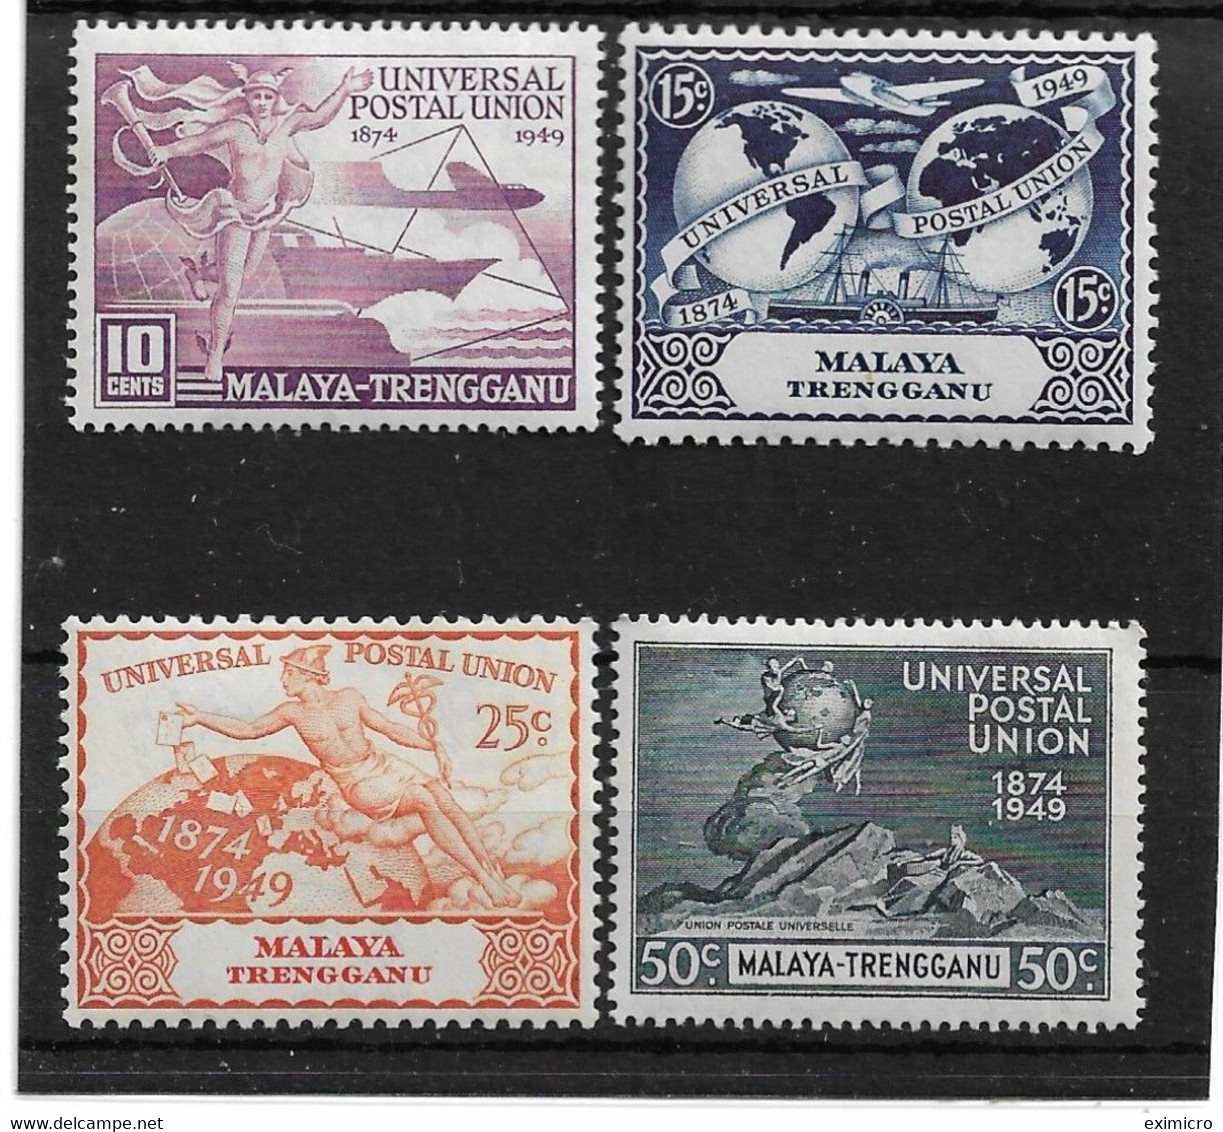 MALAYA - TRENGGANU 1949 UPU SET MOUNTED MINT Cat £5.25 - Trengganu